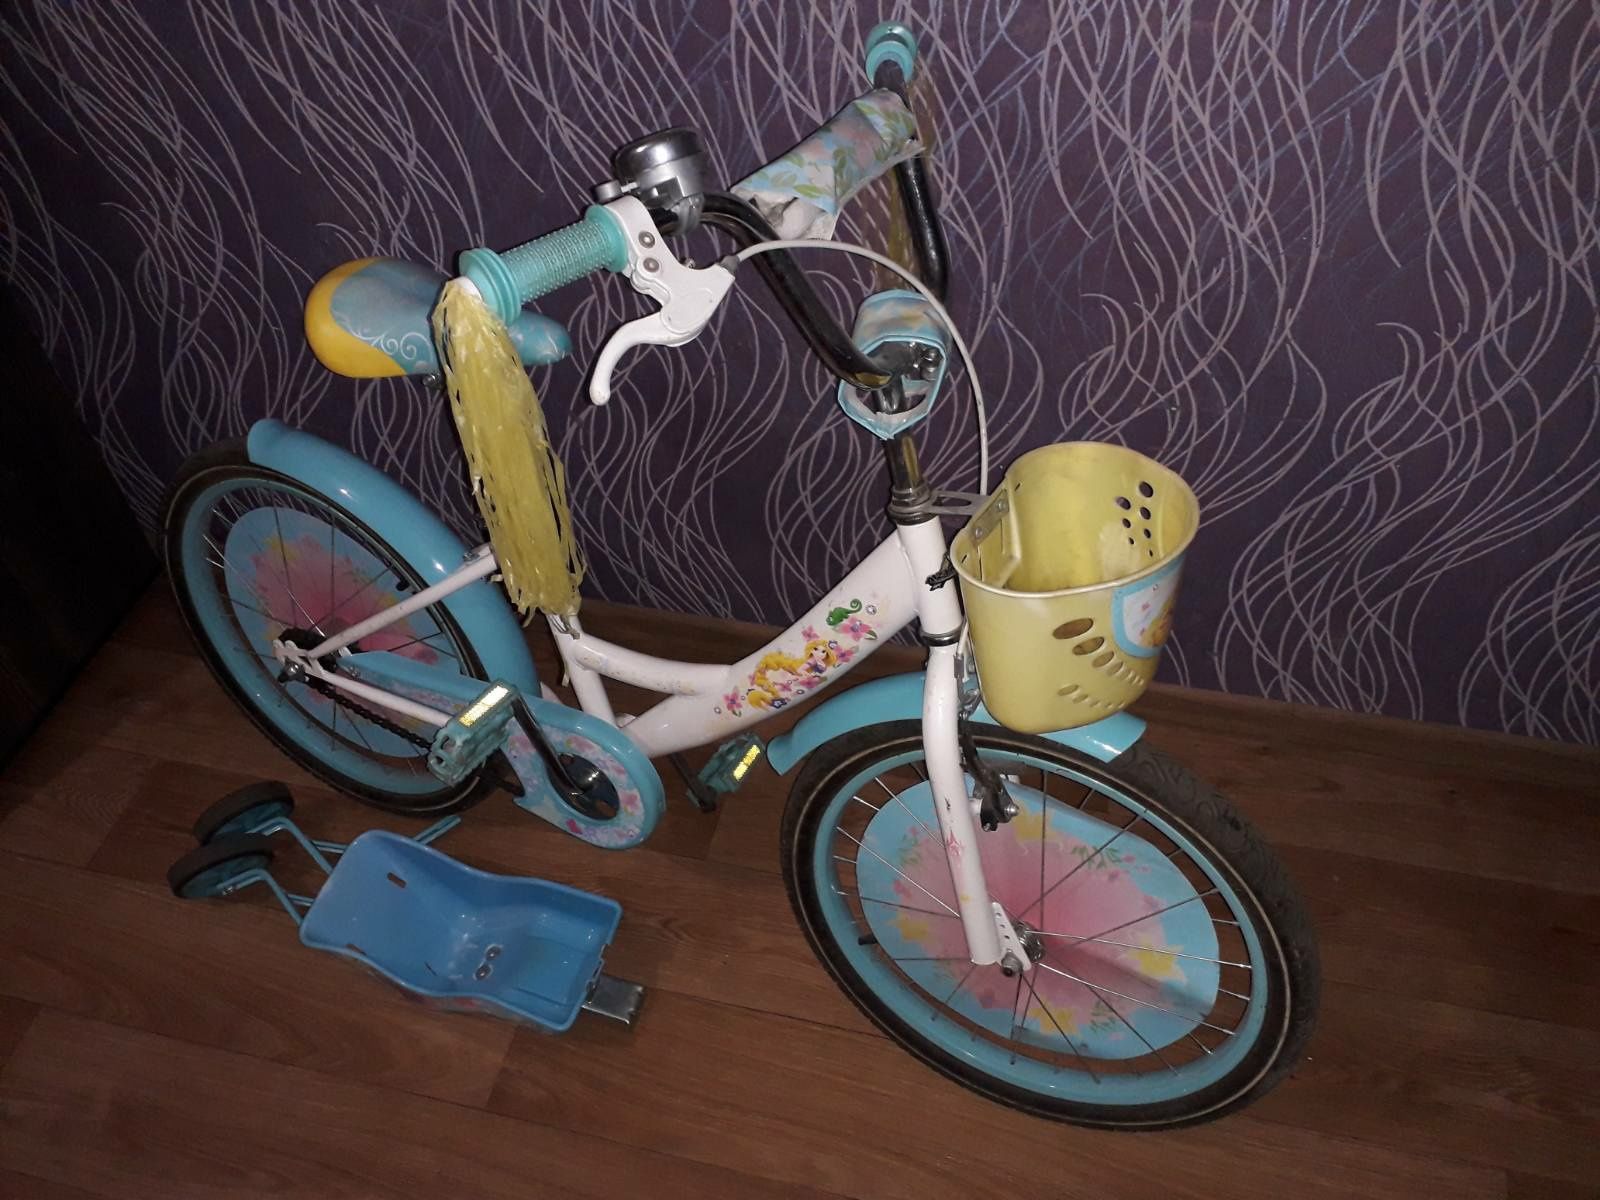 Продам велосипед для девочки, колёса 20 дюймов.